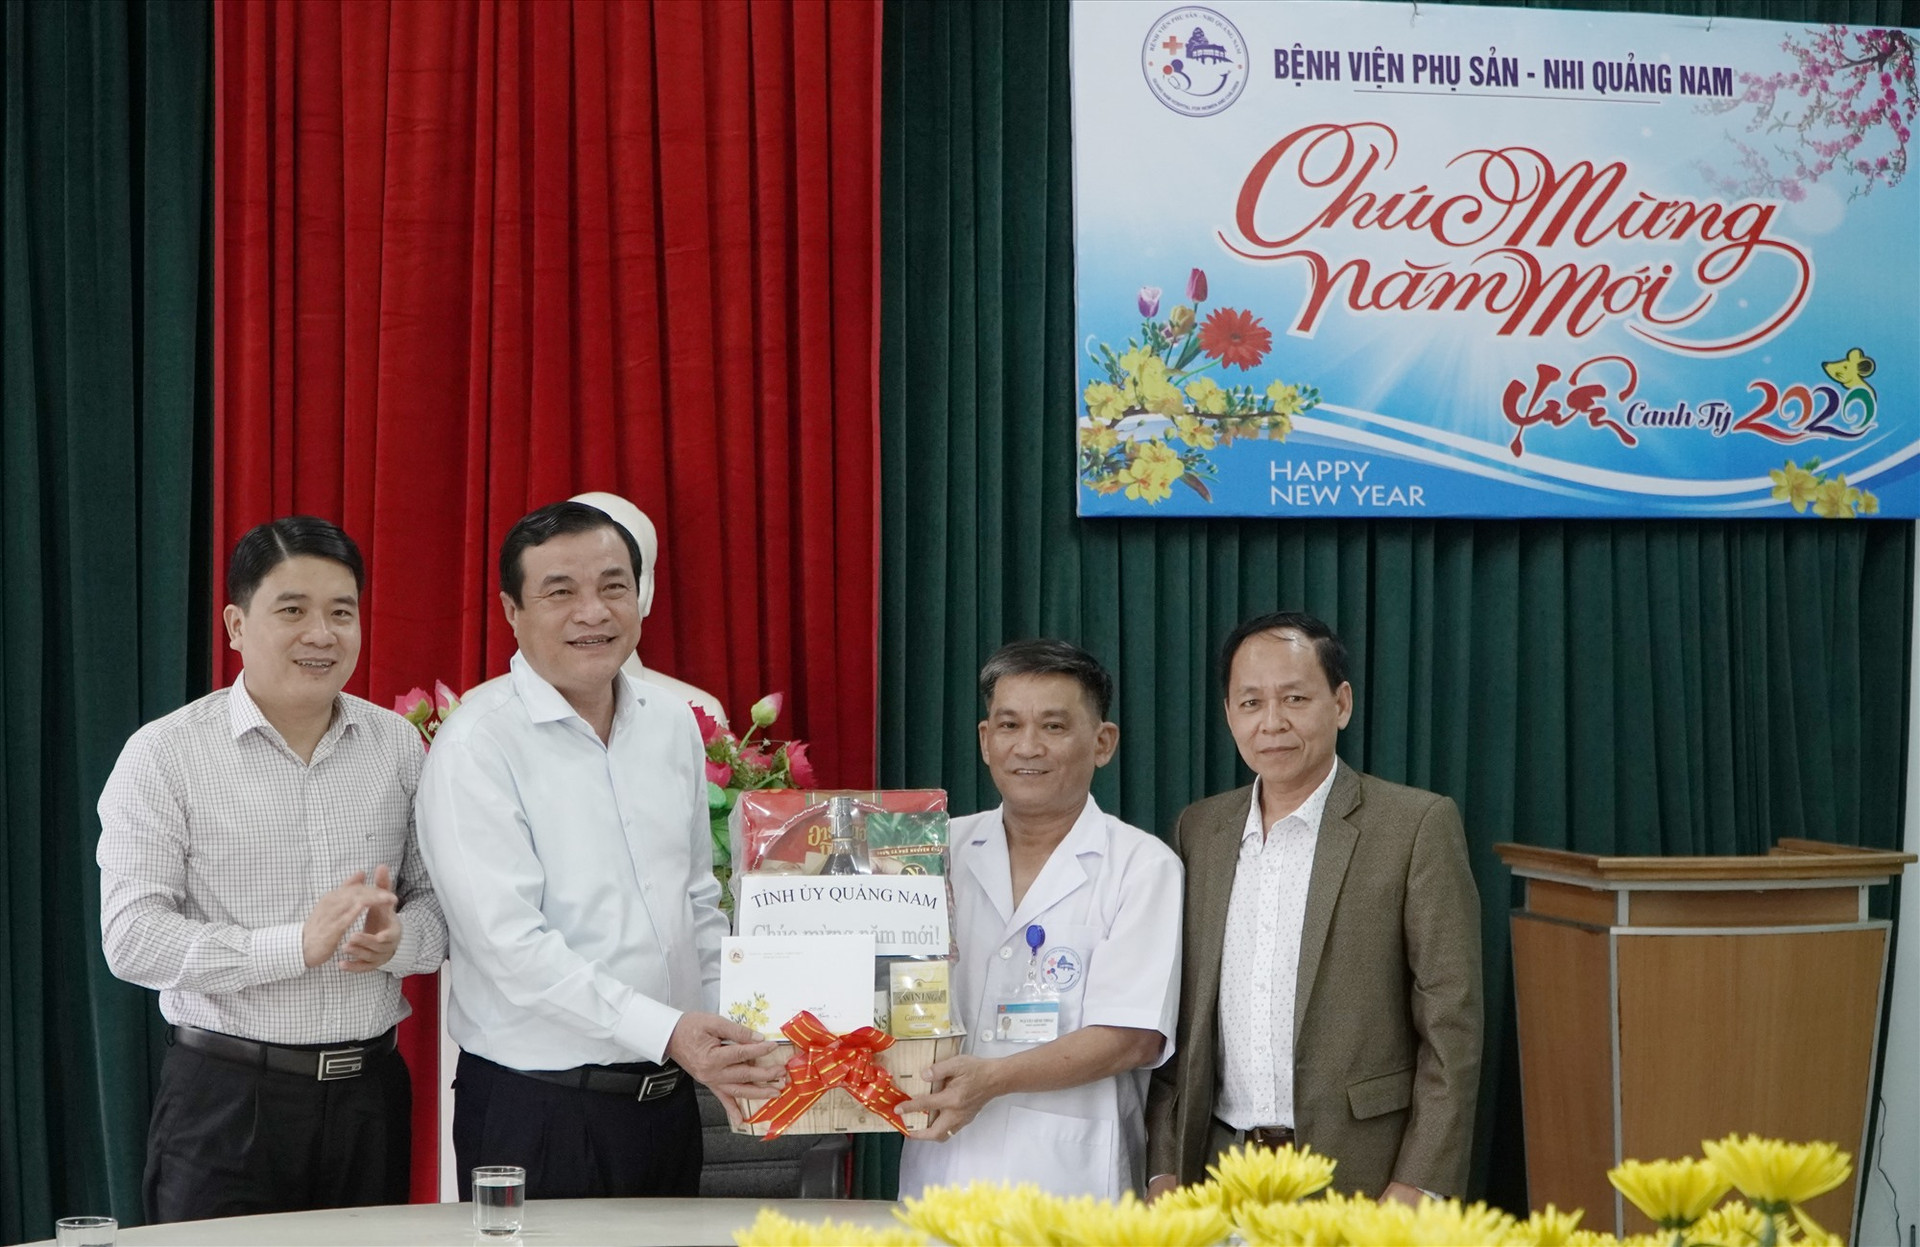 Bí thư Tỉnh ủy Phan Việt Cường tặng quà cho các y, bác sĩ, cán bộ, người lao động tại Bệnh viện Phụ sản - Nhi Quảng Nam. Ảnh: PHAN VINH